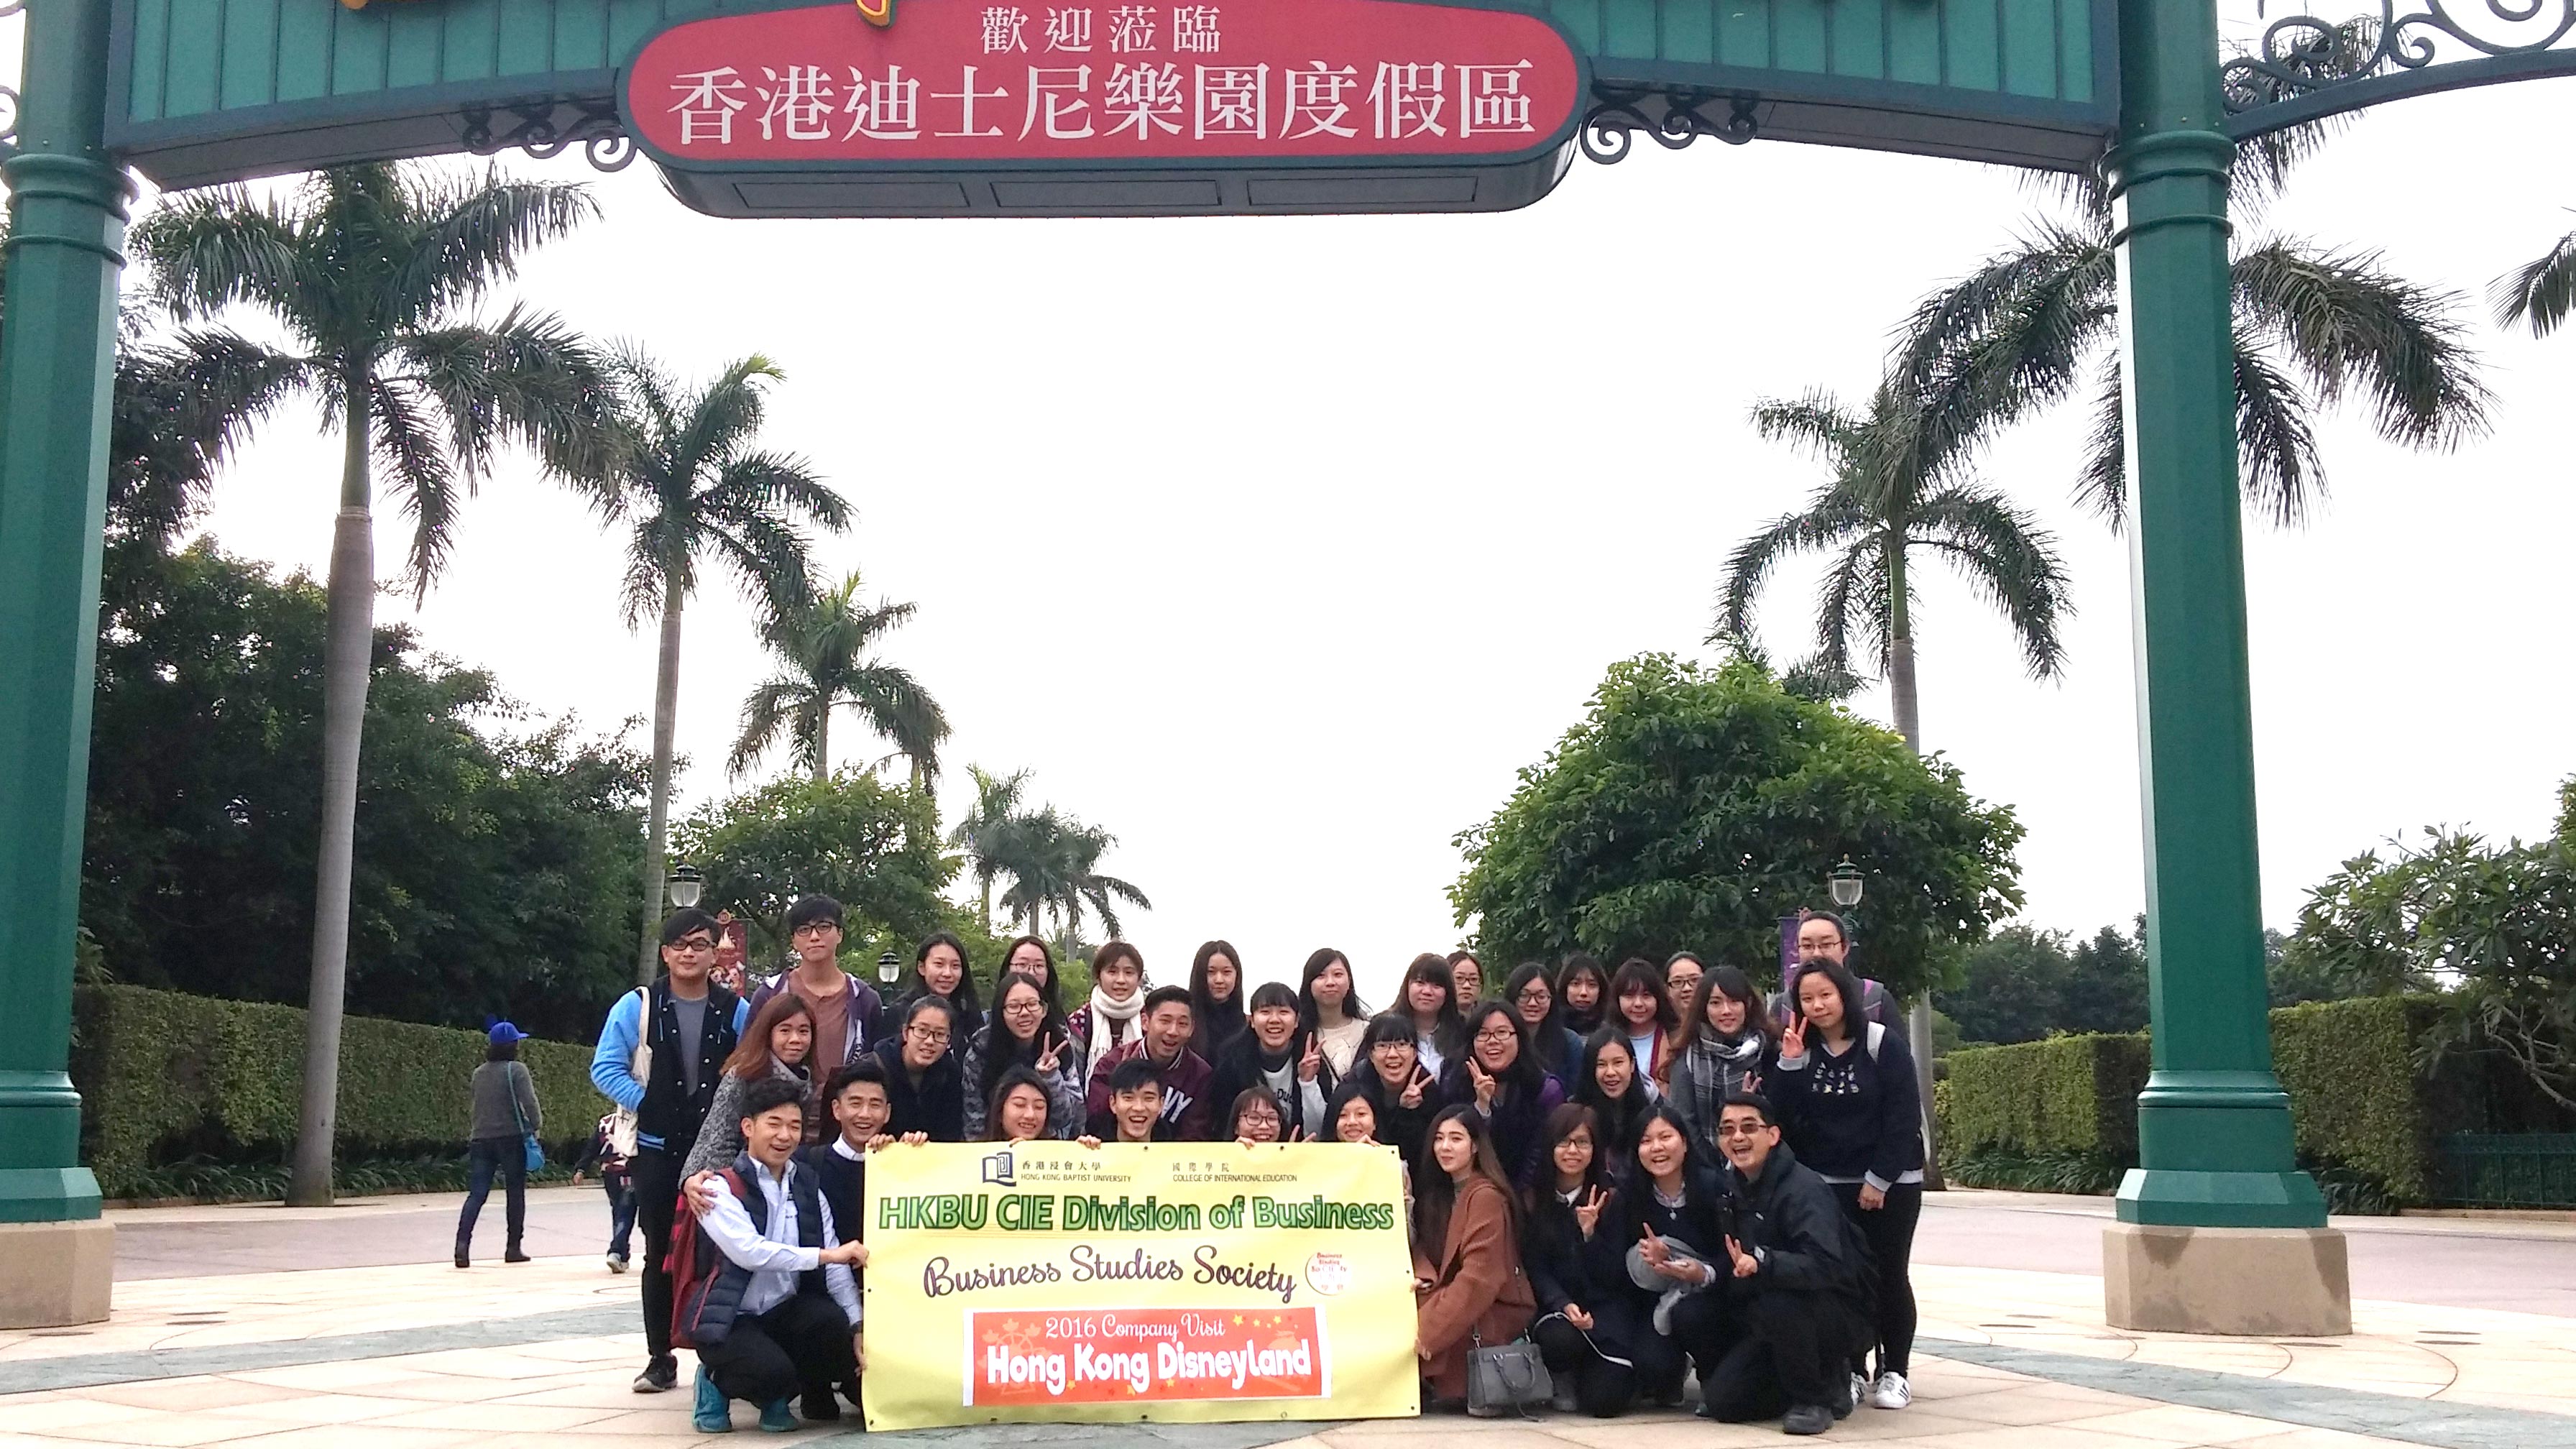 国际学院讲师徐志强博士与商学会的同学参观香港迪斯尼乐园后台的预备工作。